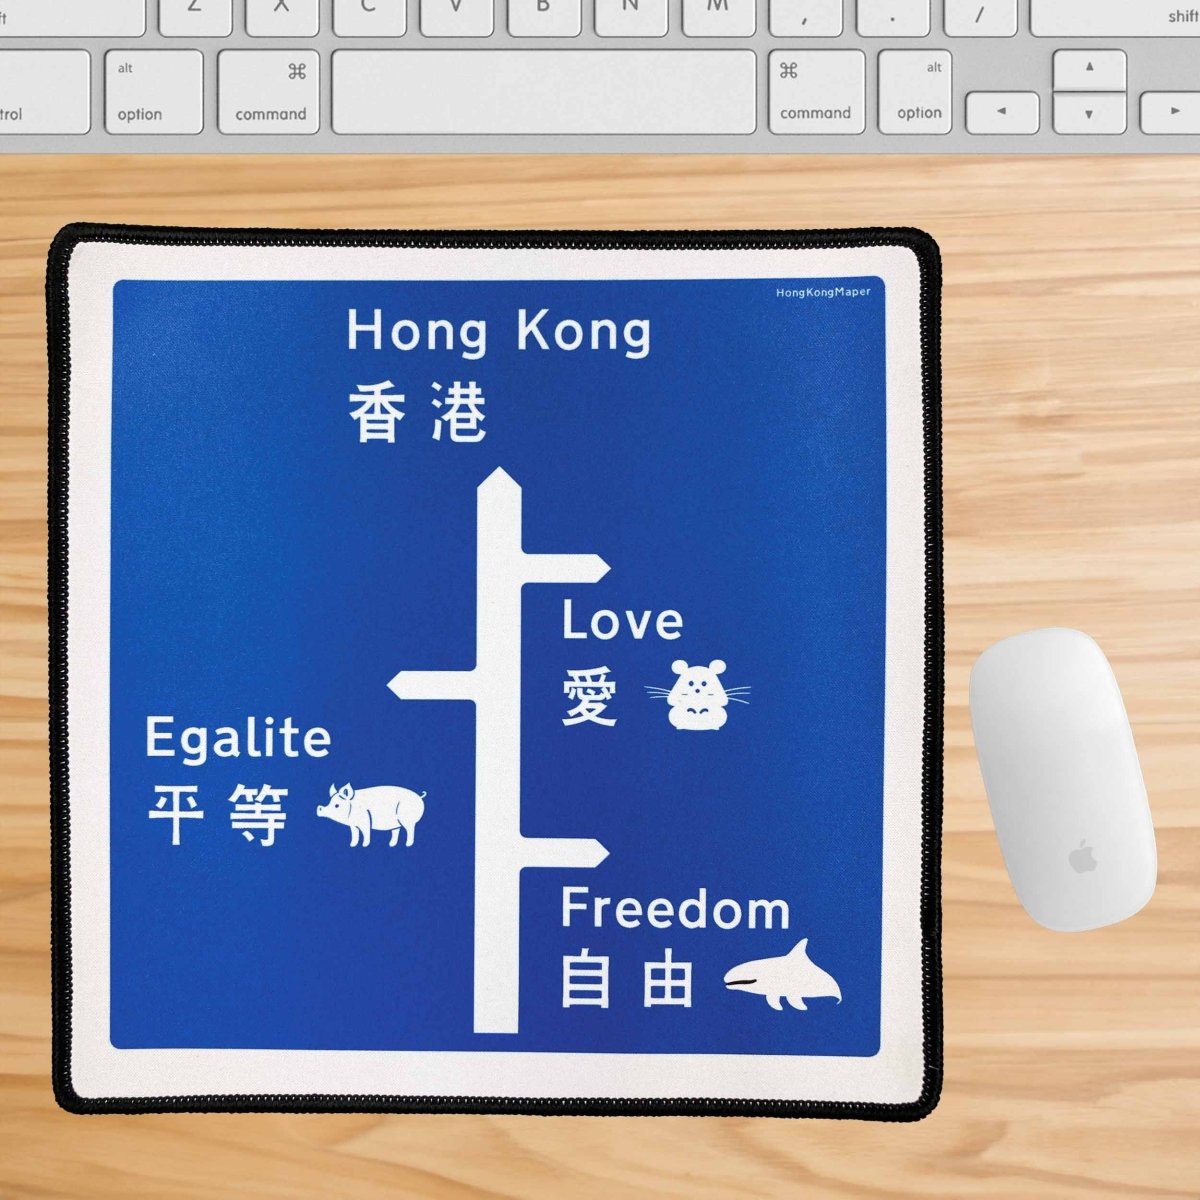 香港路牌(保護動物)滑鼠墊 - Hong Kong Maper